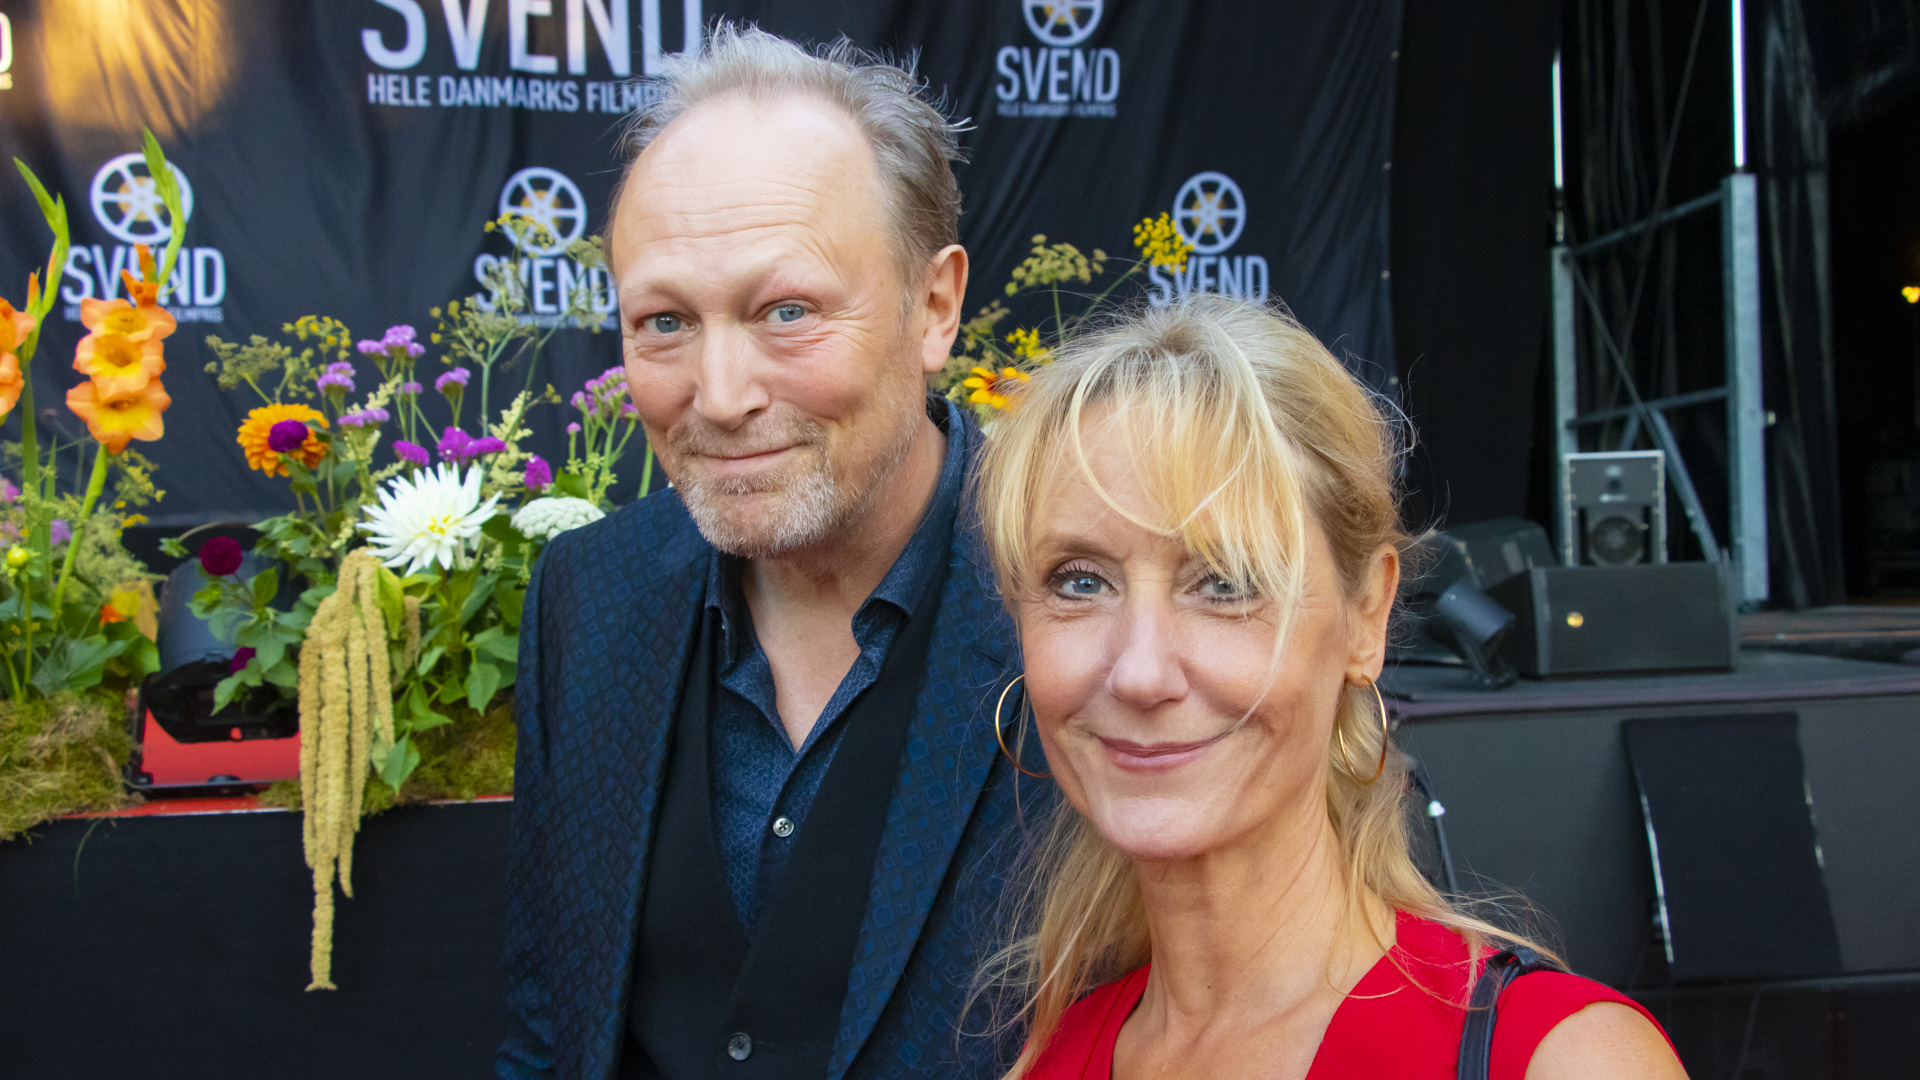 Lars Mikkelsen Anette Støvelbæk ved Svend Filmfestival i Svendborg